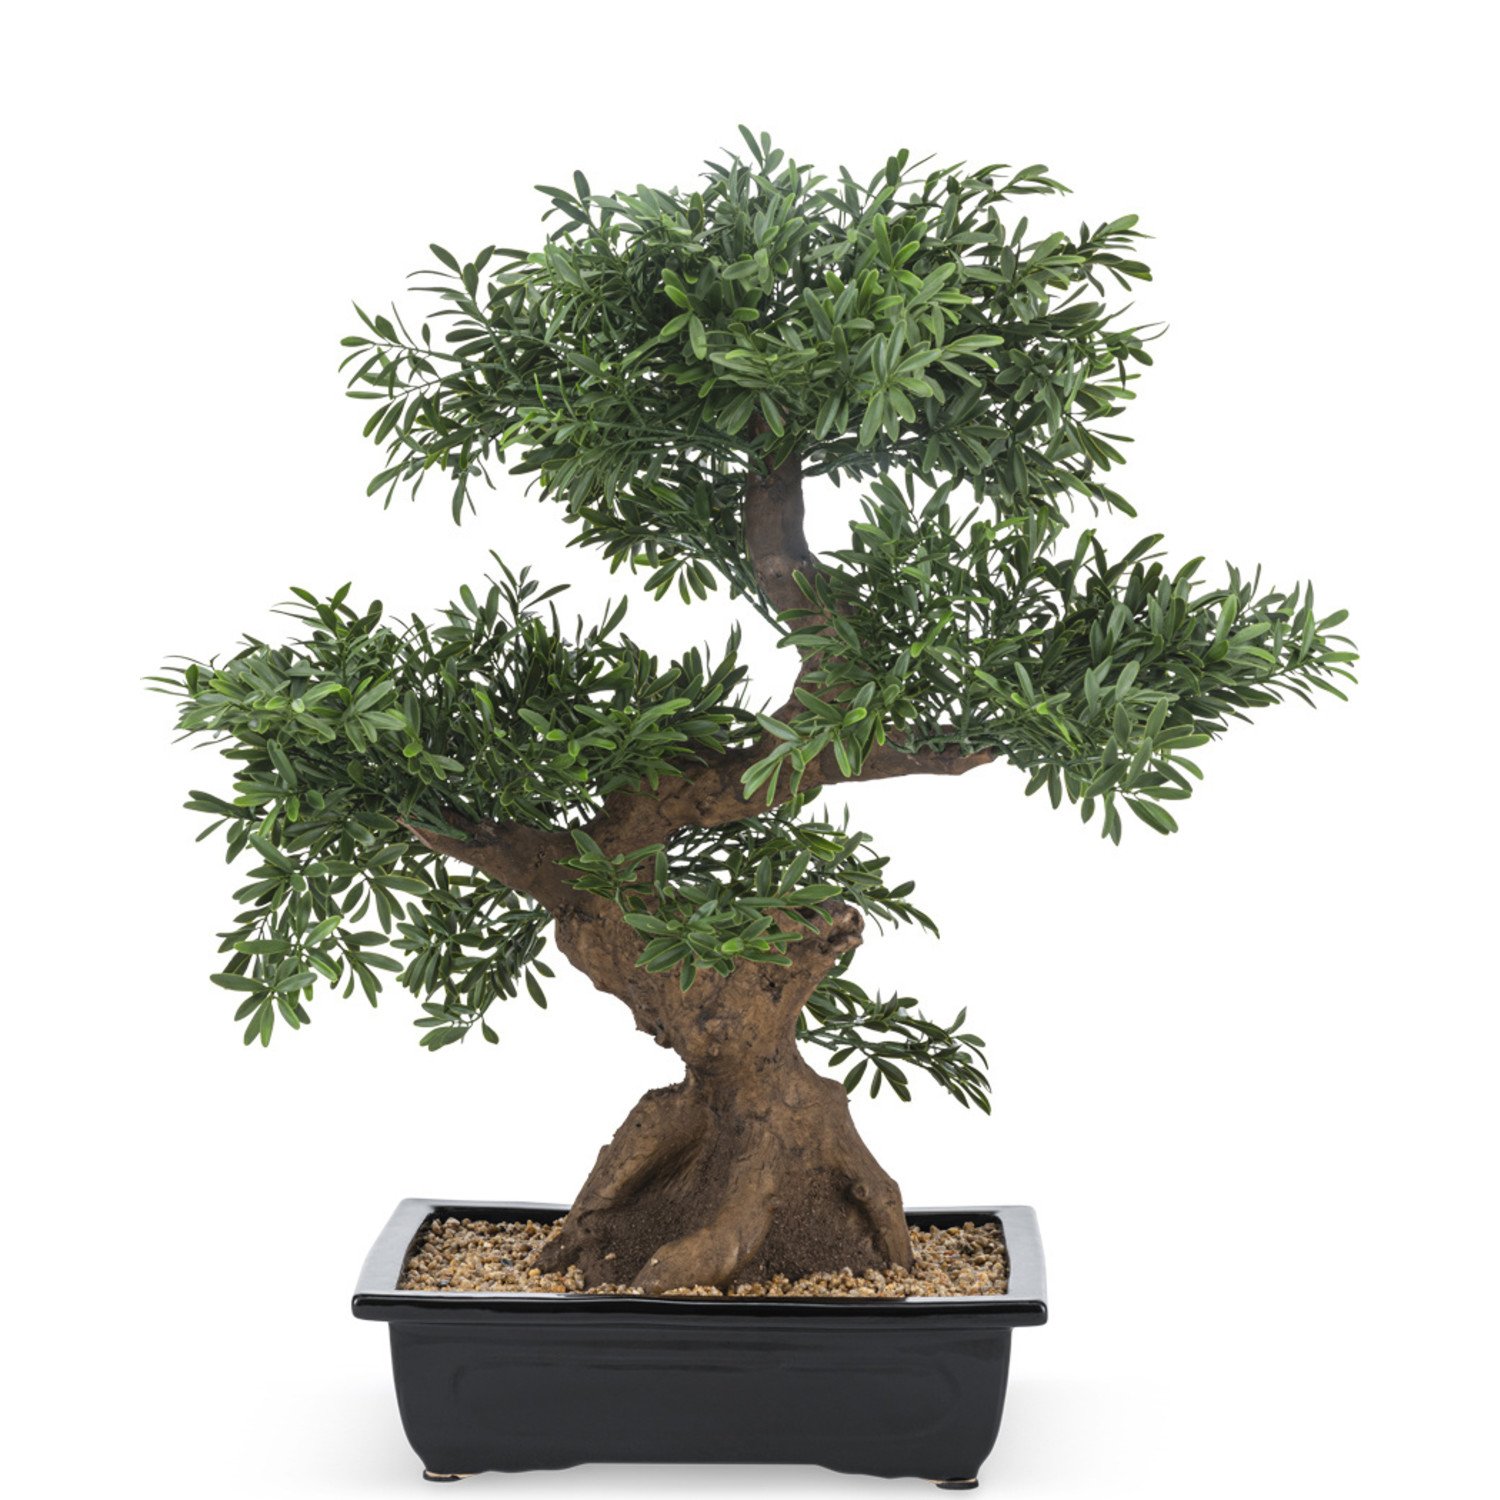 Easyplants Bonsaibaum 70cm Künstlicher -